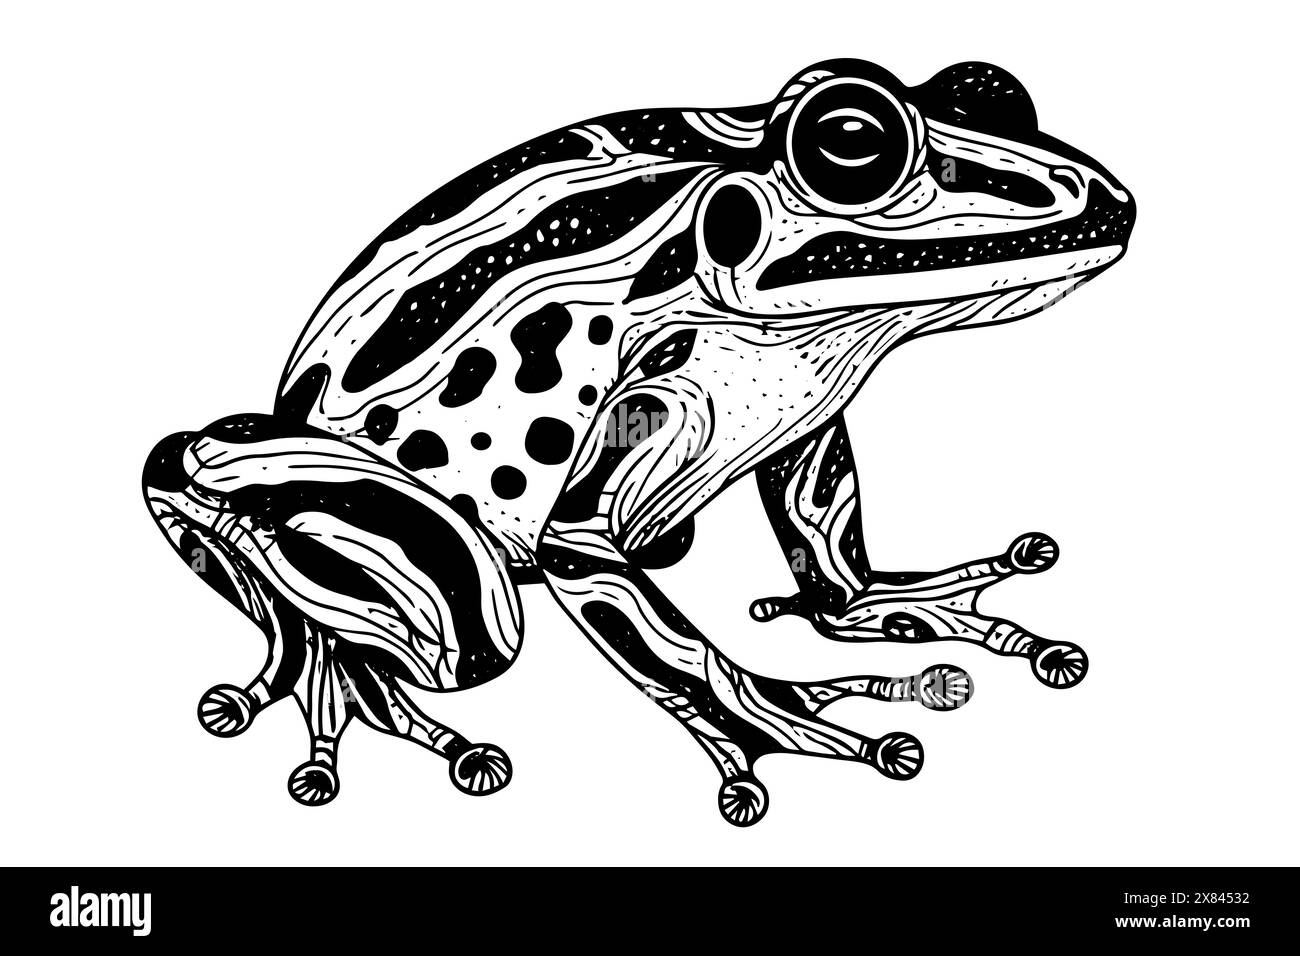 Croquis à l'encre dessiné à la main de grenouille Illustration vectorielle de style gravé. Illustration de Vecteur